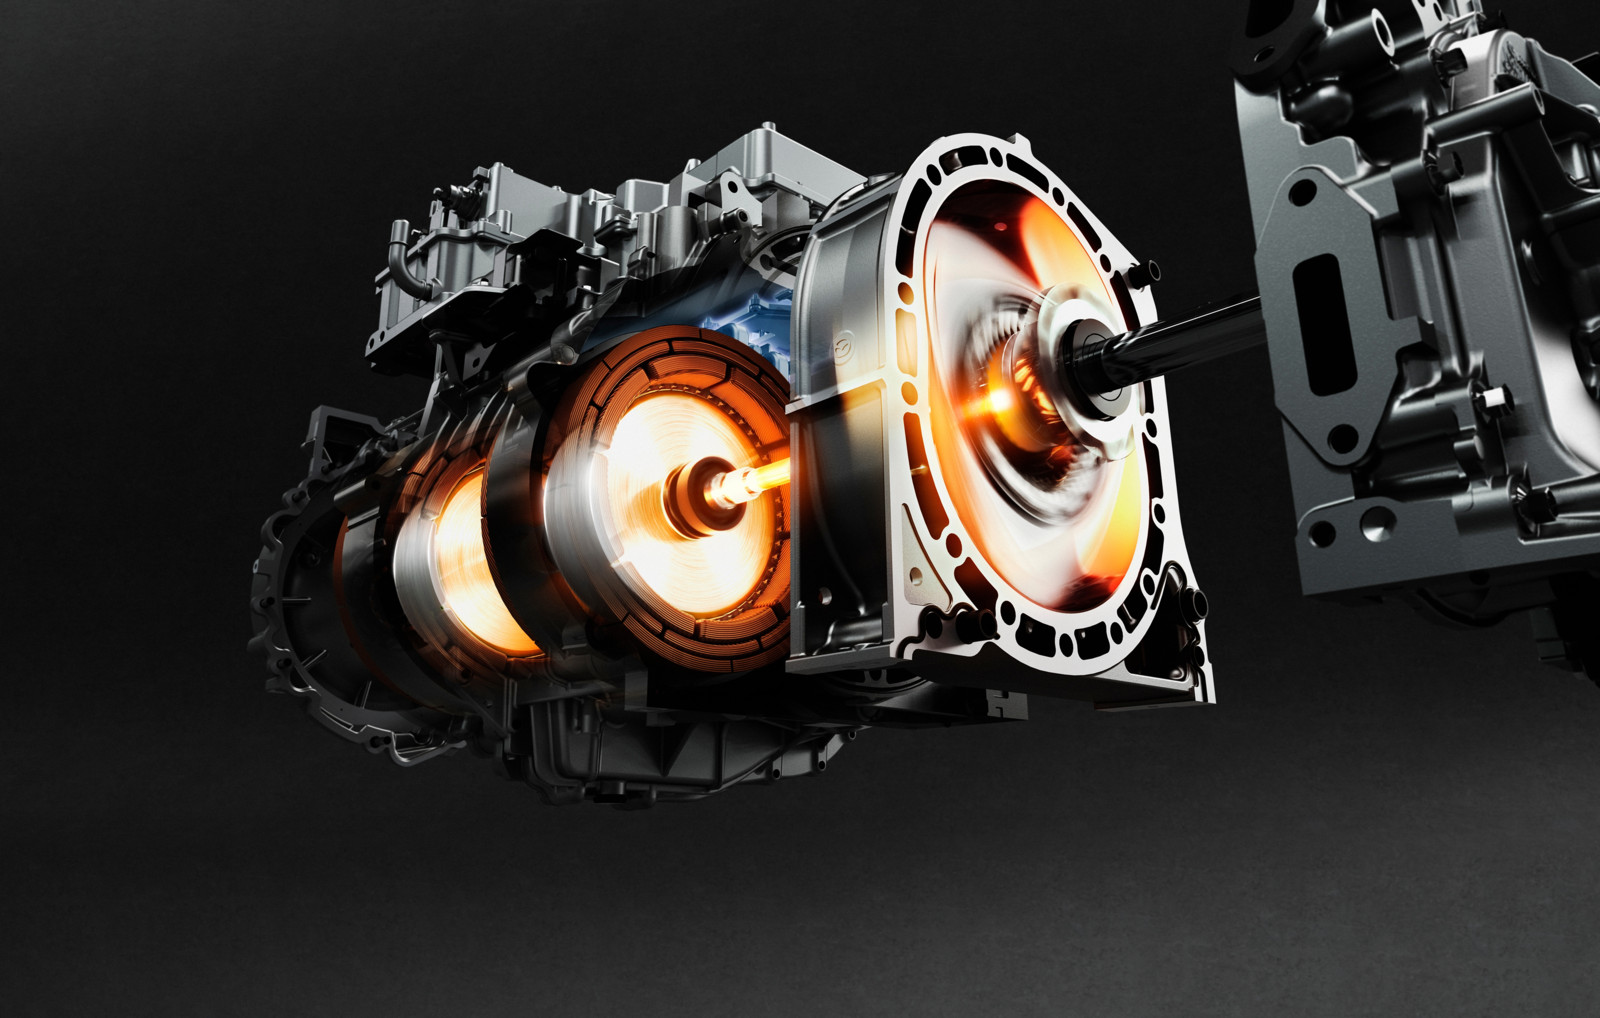 Als Antrieb für serielle Hybriden soll der Wankelmotor sein Comeback erleben, wenn es nach Mazda geht. 